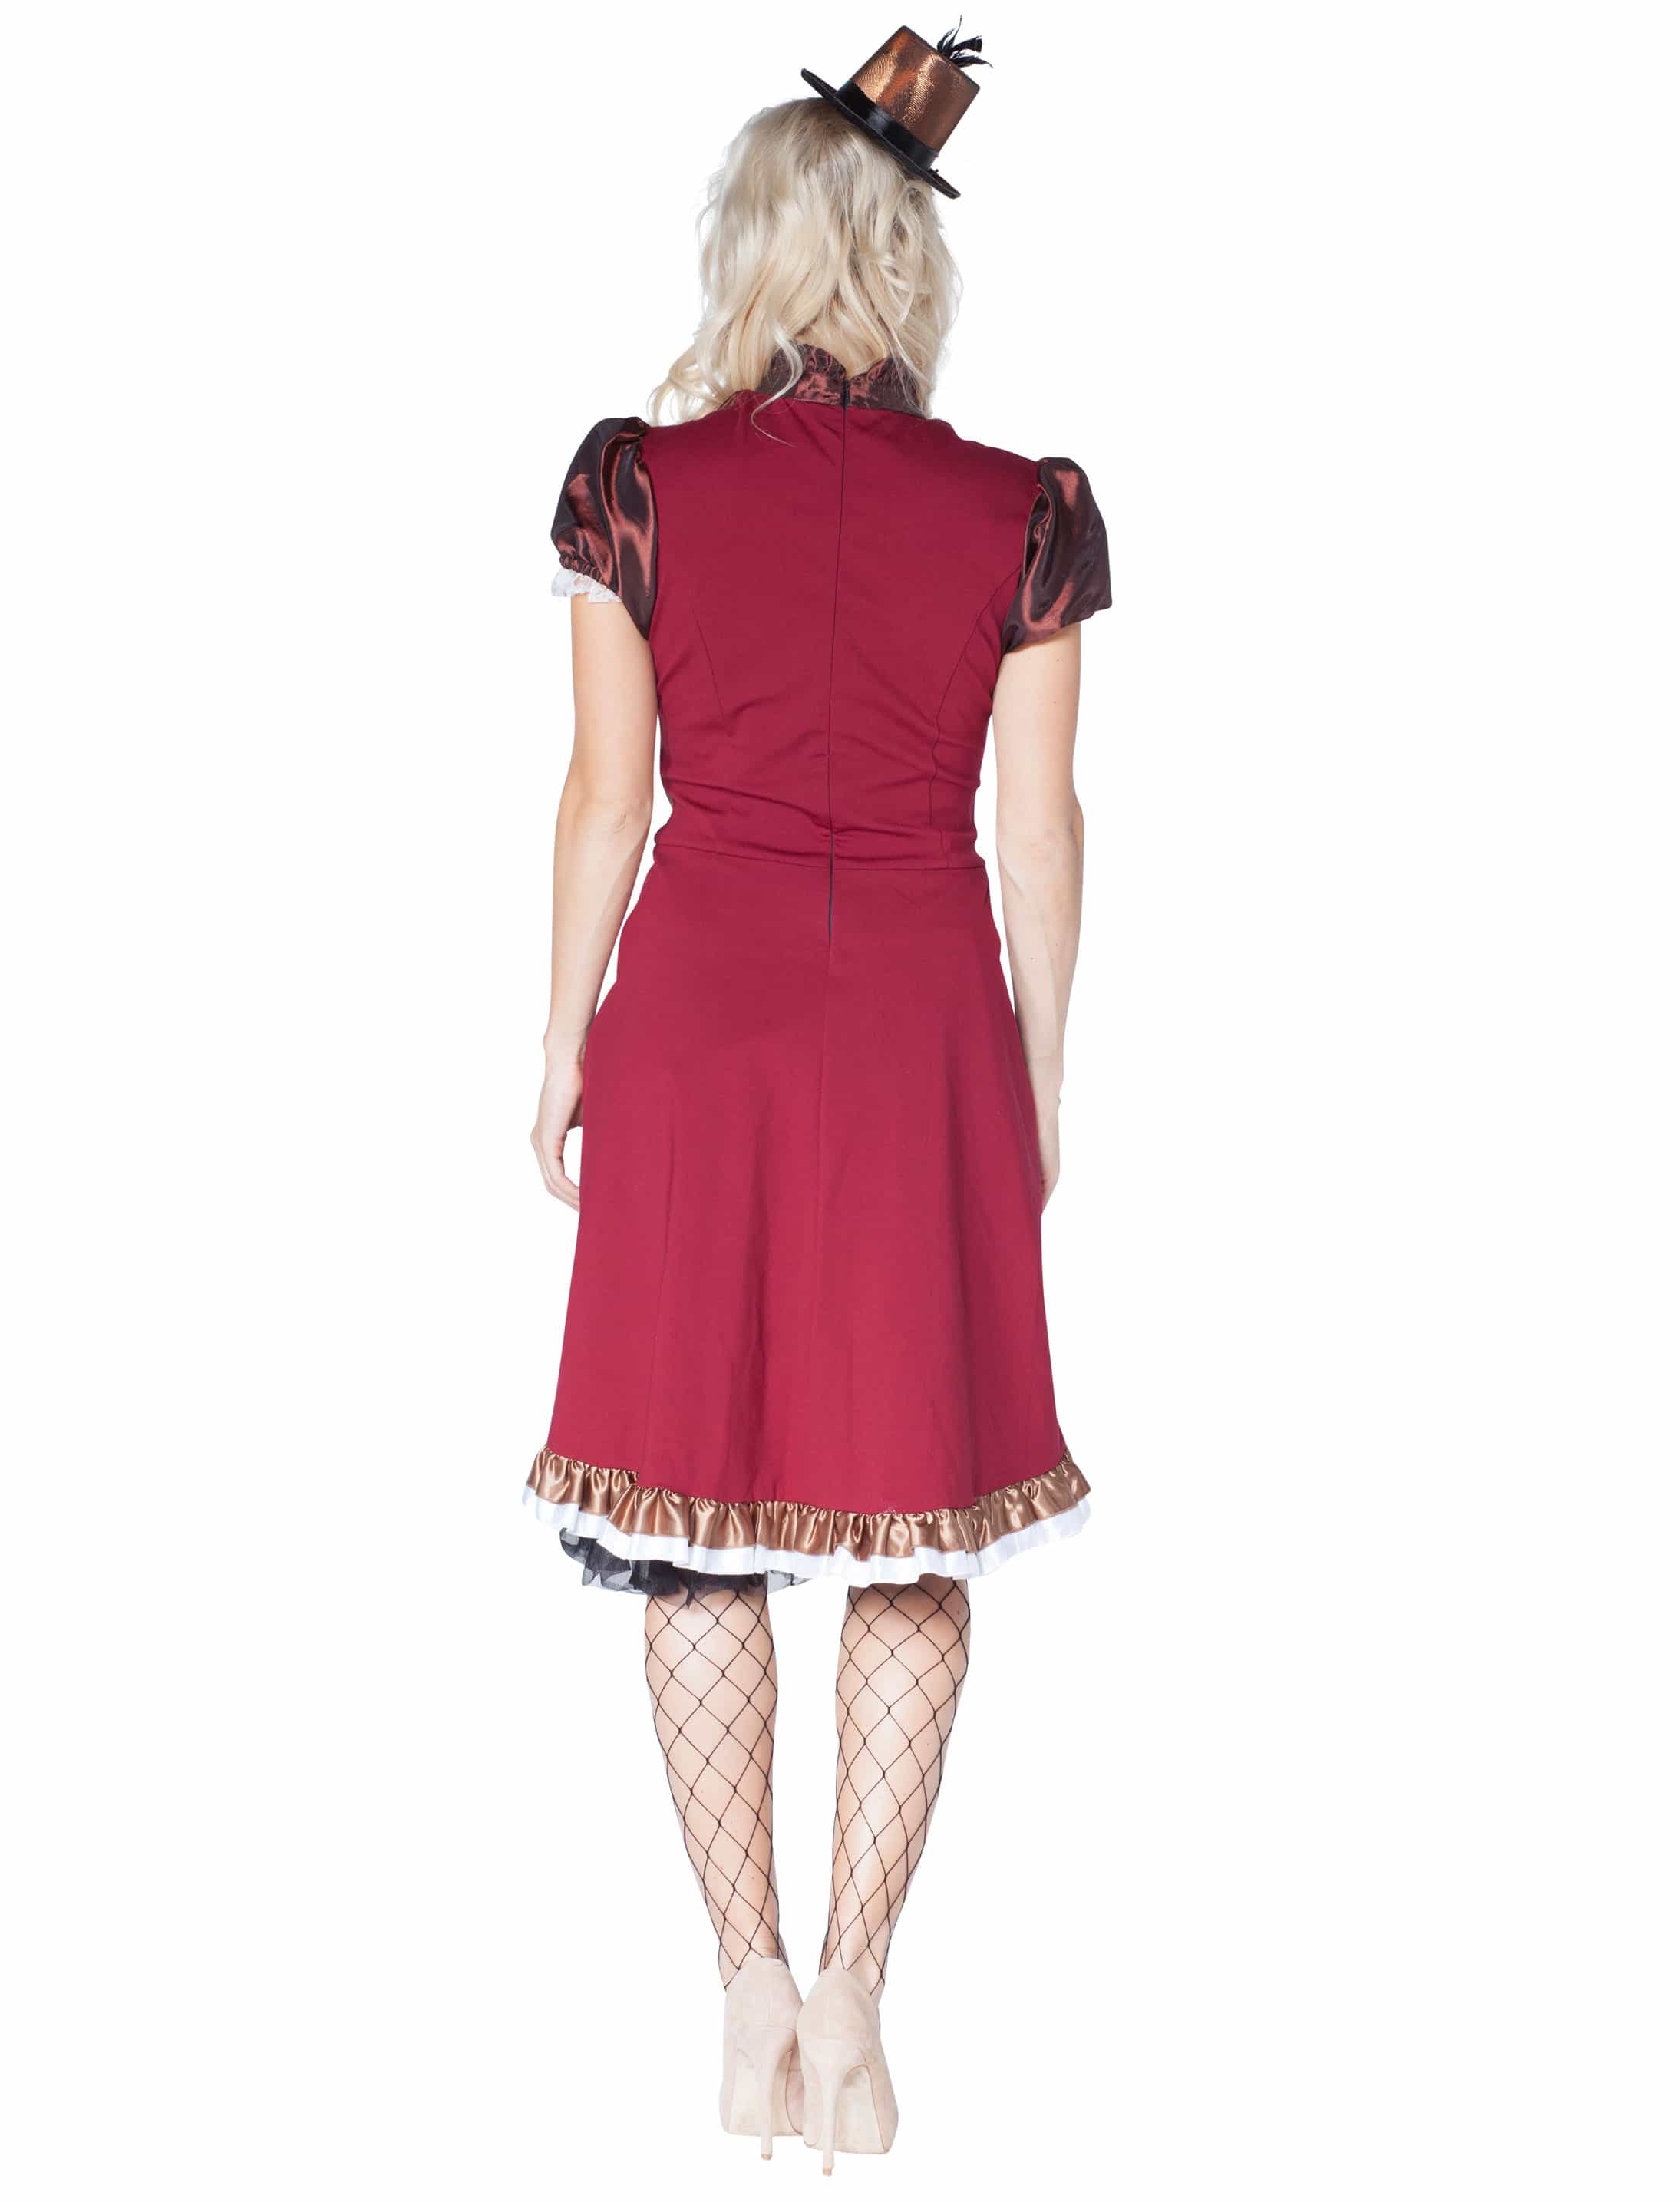 Kleid Steampunk braun/rot 46